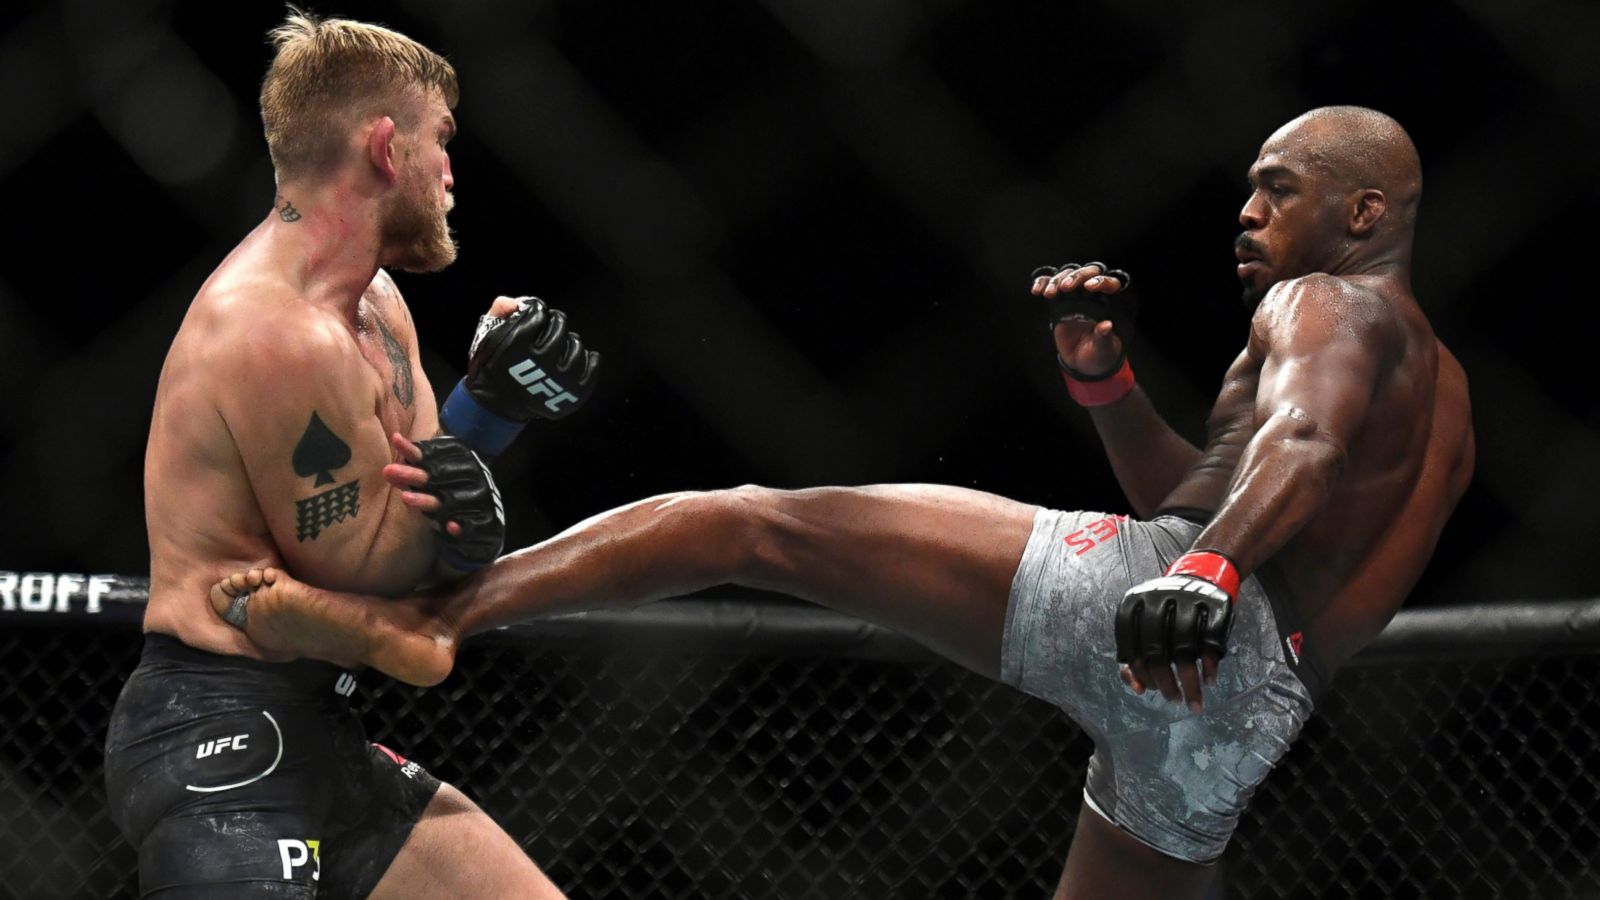 video review : Jon Jones versus Alexander Gustafsson at UFC 232